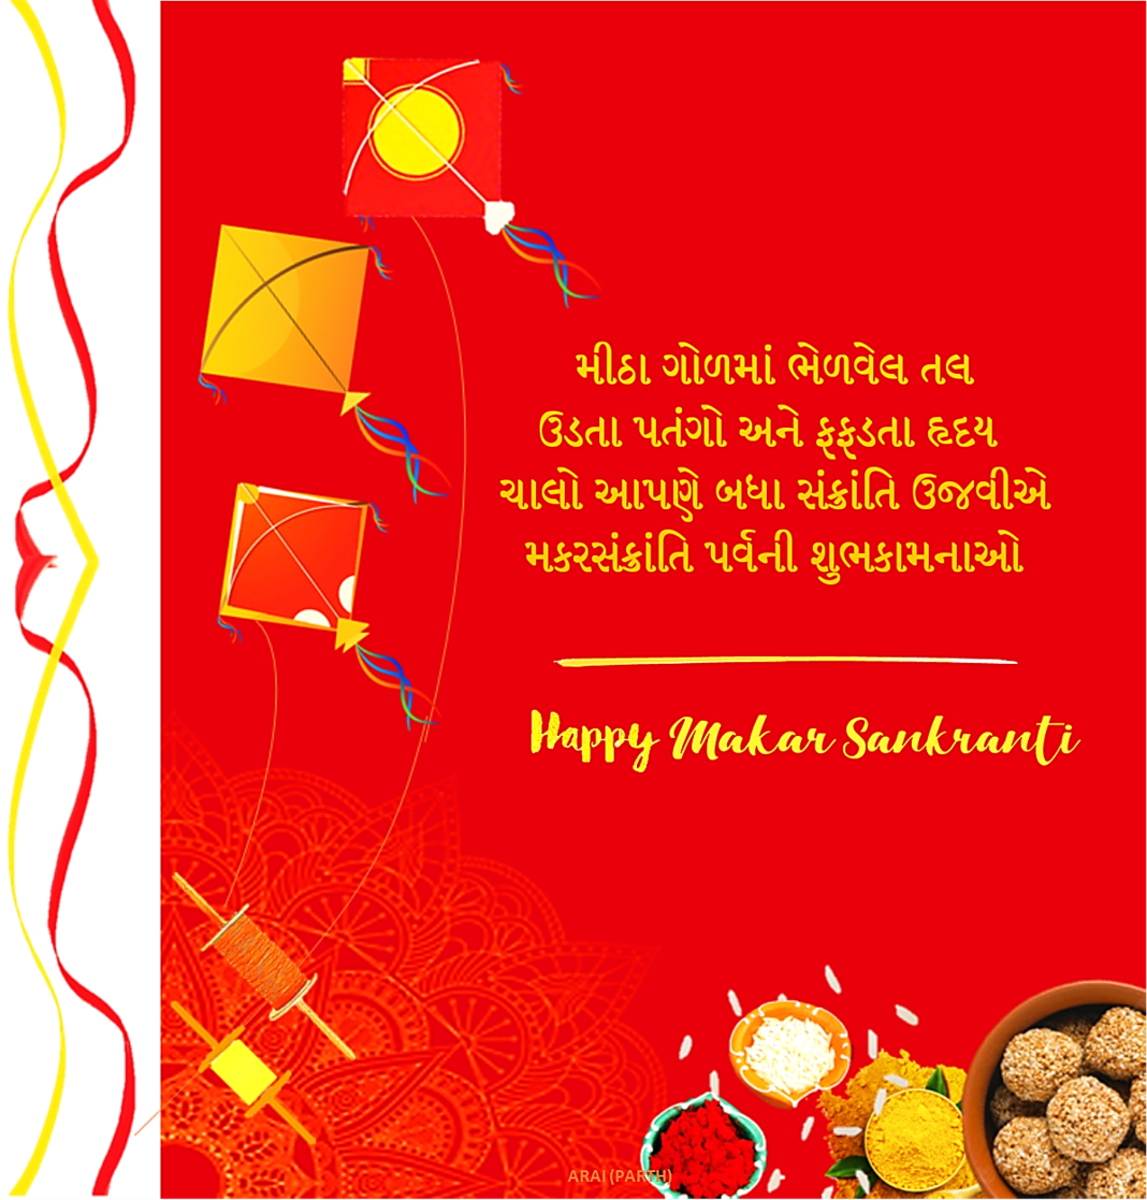  Happy Uttarayan (Makar Sankranti) Wishes in Gujarati